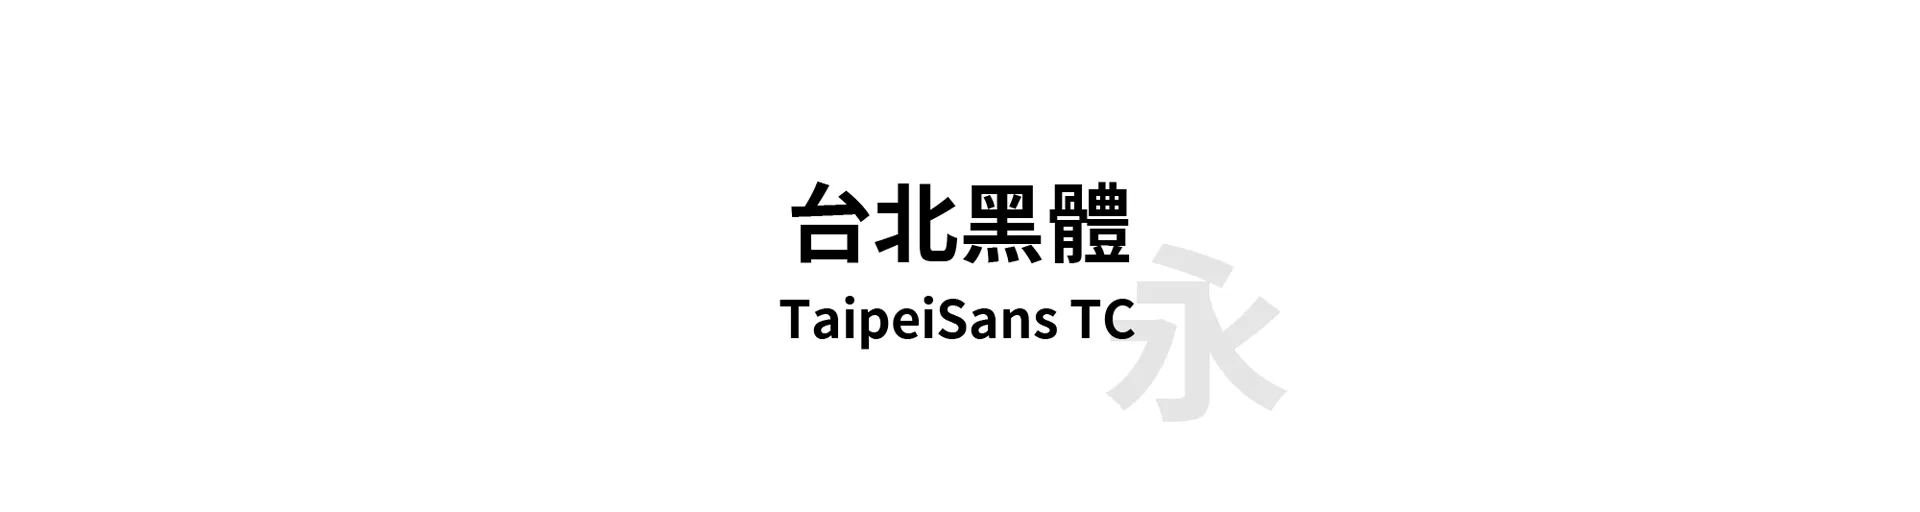 TaipeiSans TC